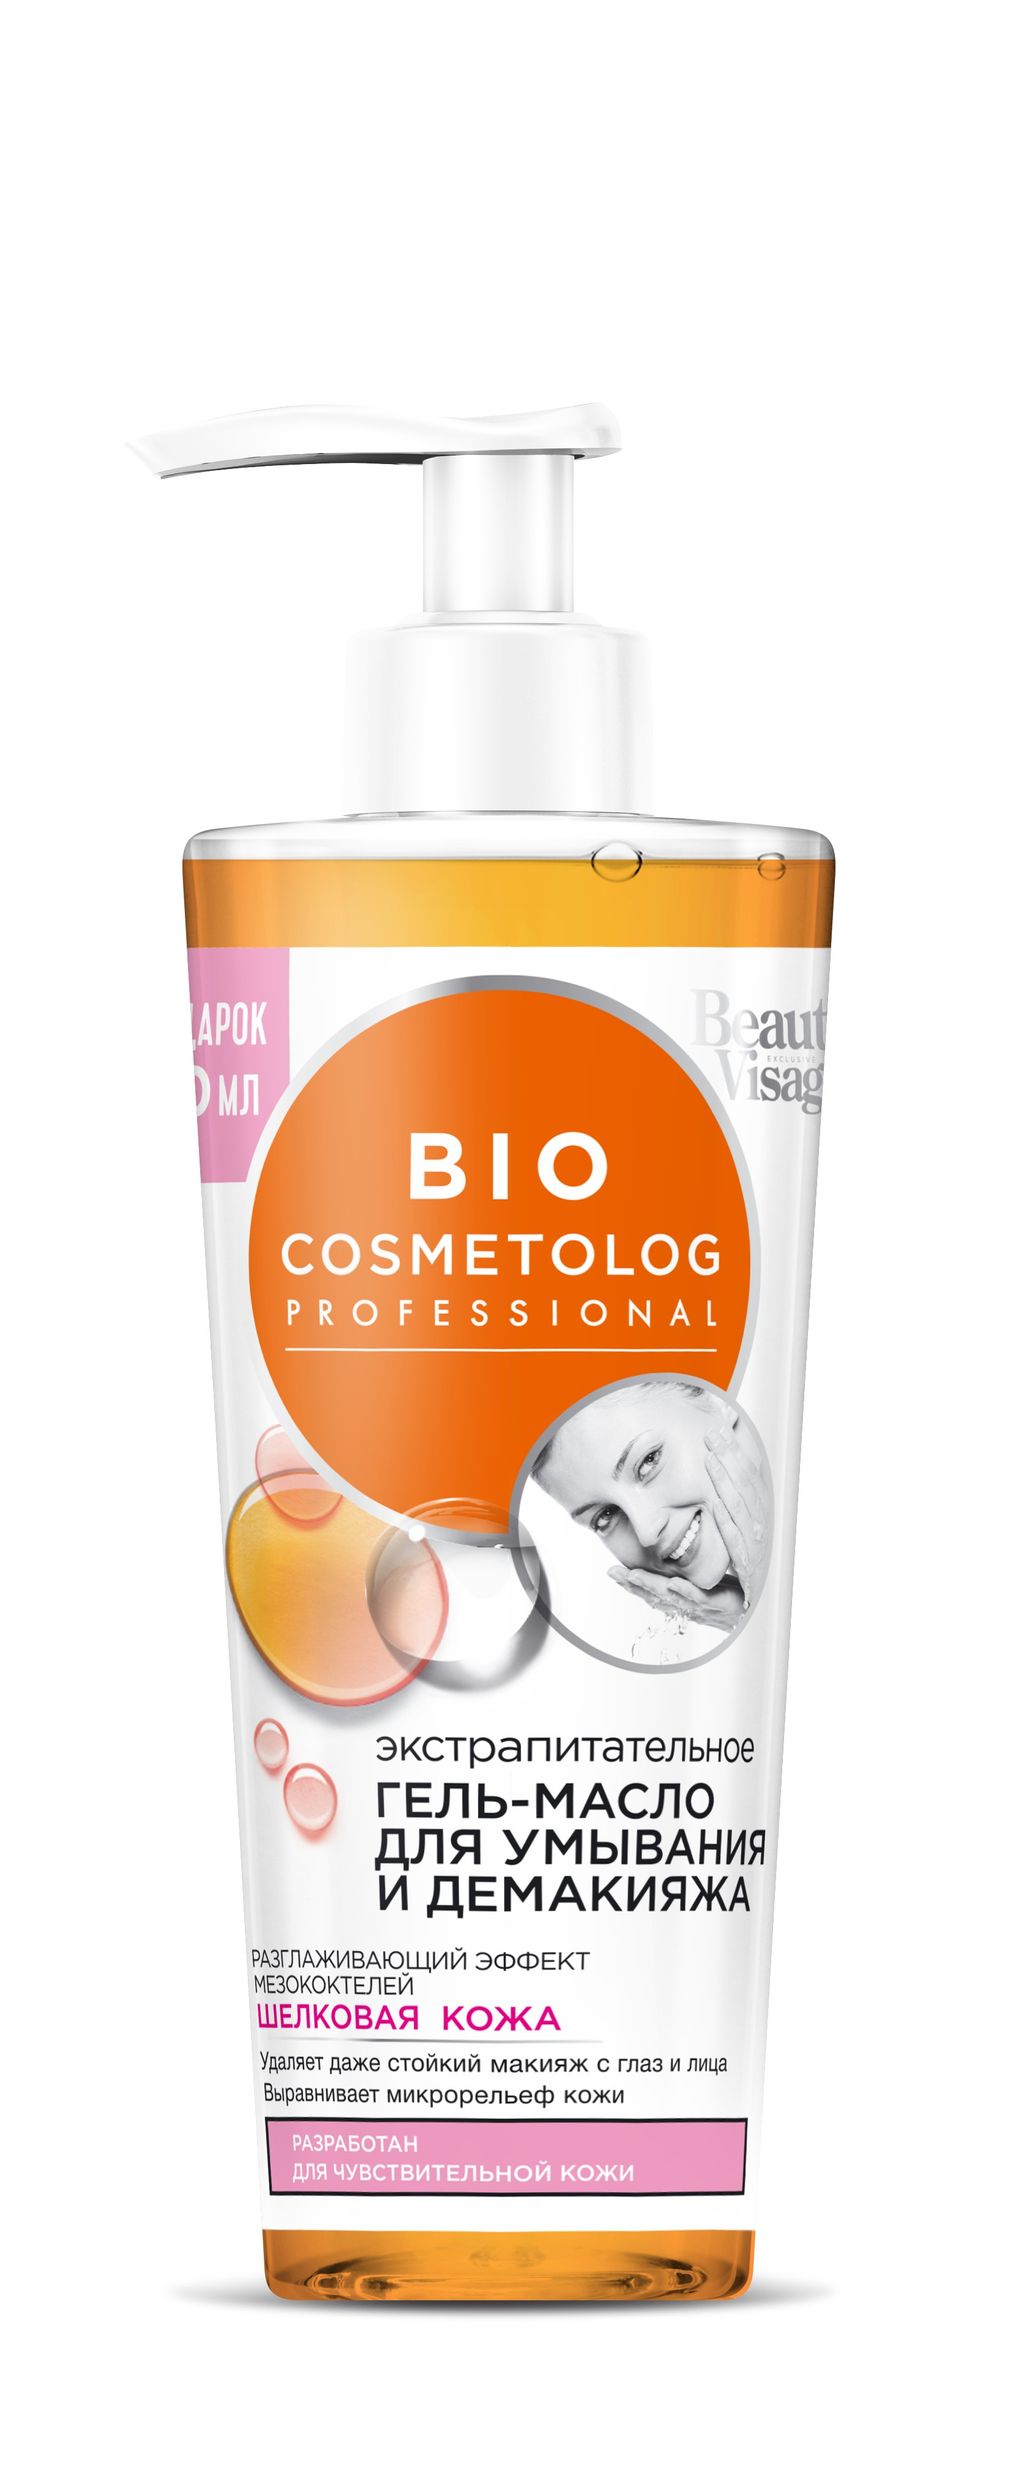 фото упаковки Bio Cosmetolog Гель-масло для умывания